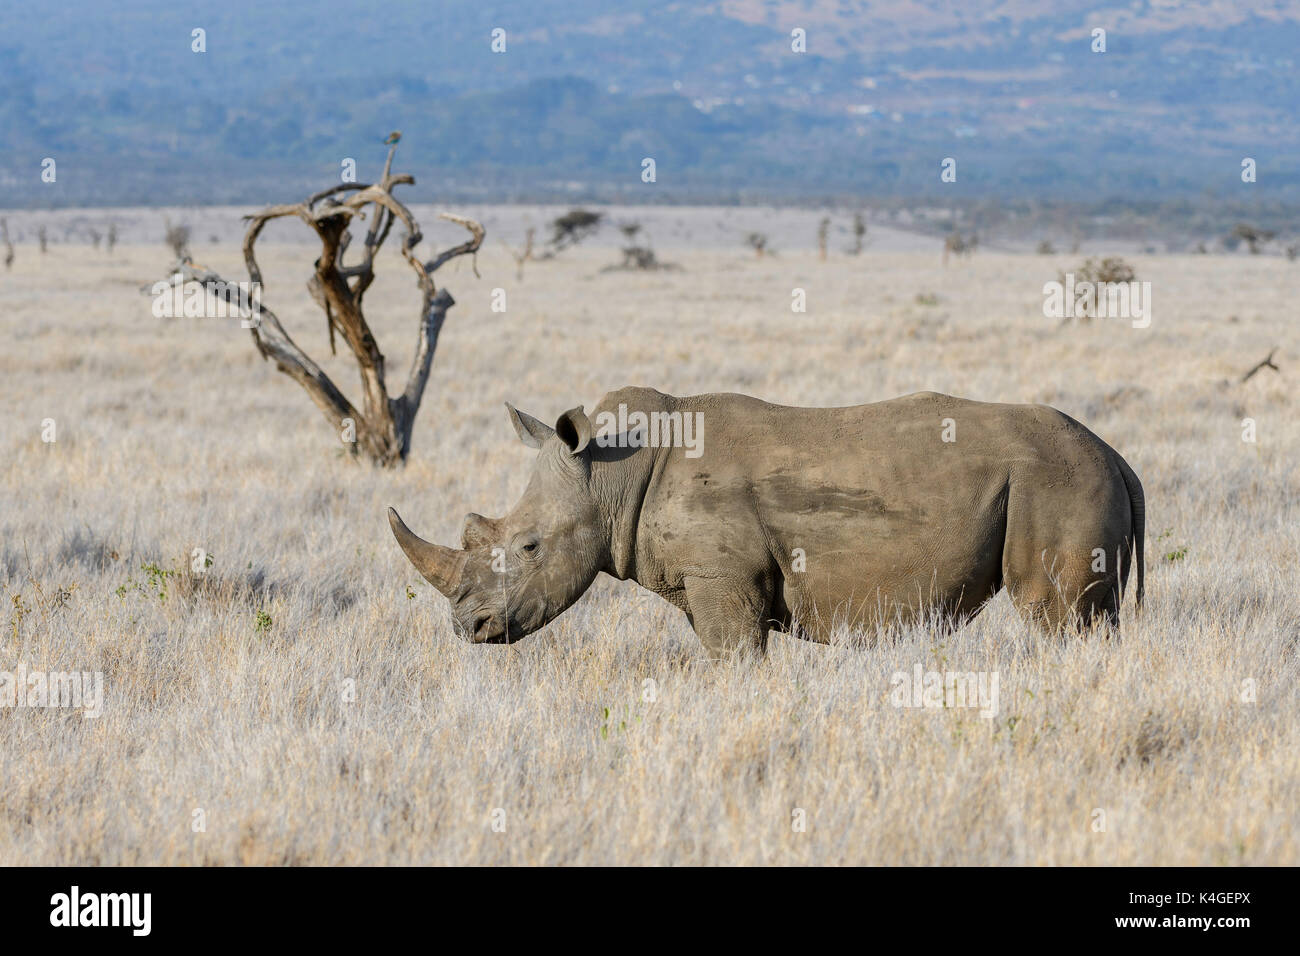 Southern White Rhinoceros, Lewa Wildlife Conservancy, Kenya Stock Photo